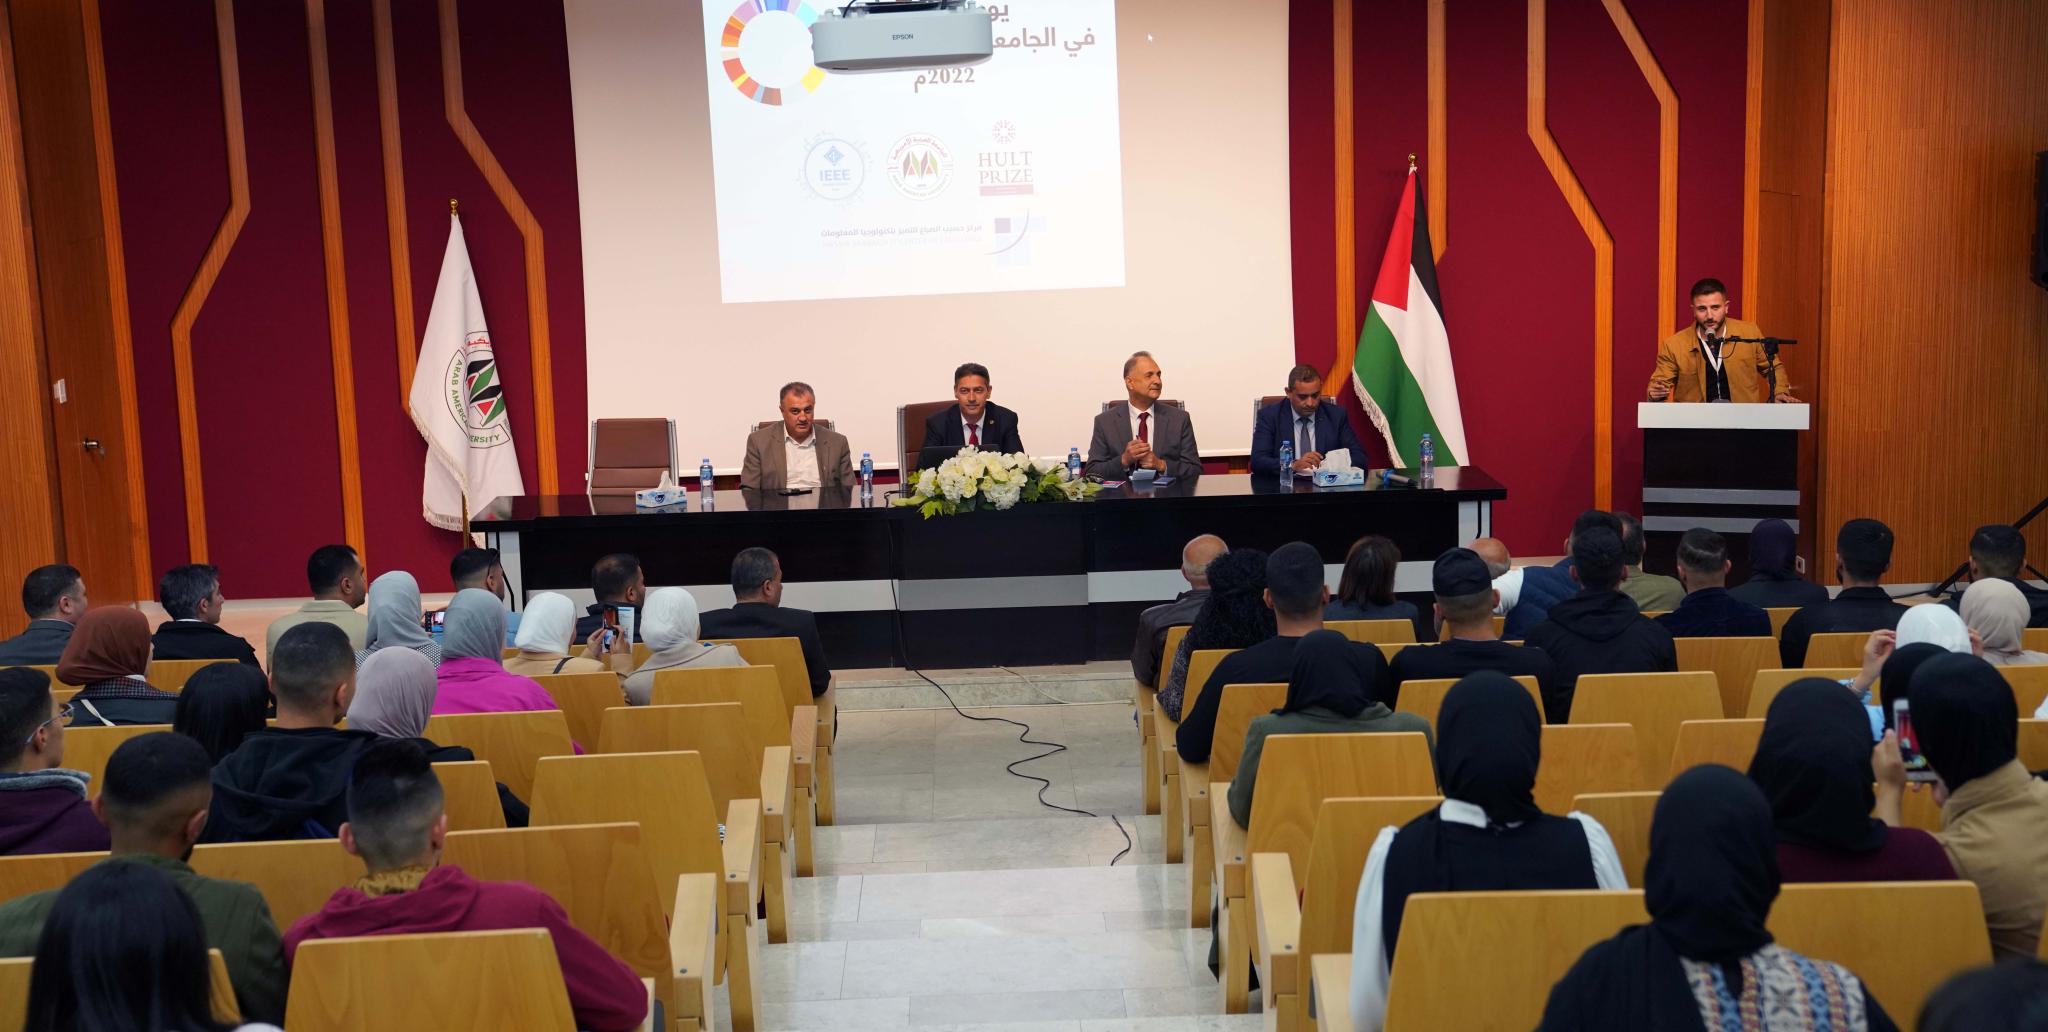 انطلاق فعاليات يوم الريادة في الجامعة العربية الأمريكية لعام 2022